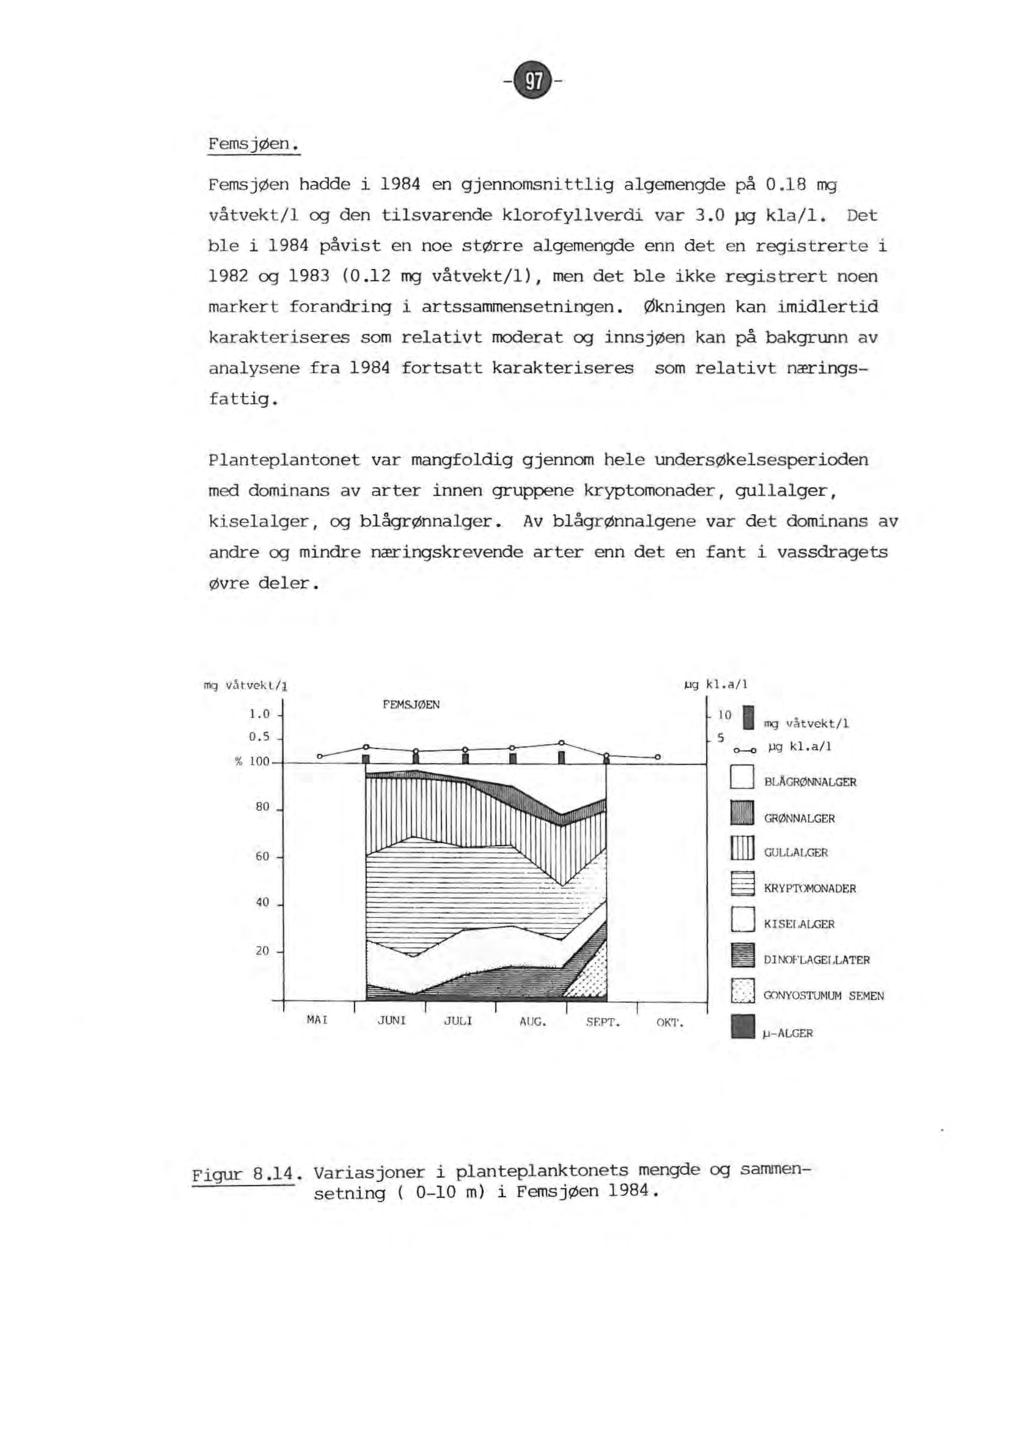 - - Femsjøen. FemsjØen hadde i 1984 en gjennomsnittig agemengde på 0.18 mg våtvekt/1 og den tisvarende korofyverdi var 3.0 pg ka/1.